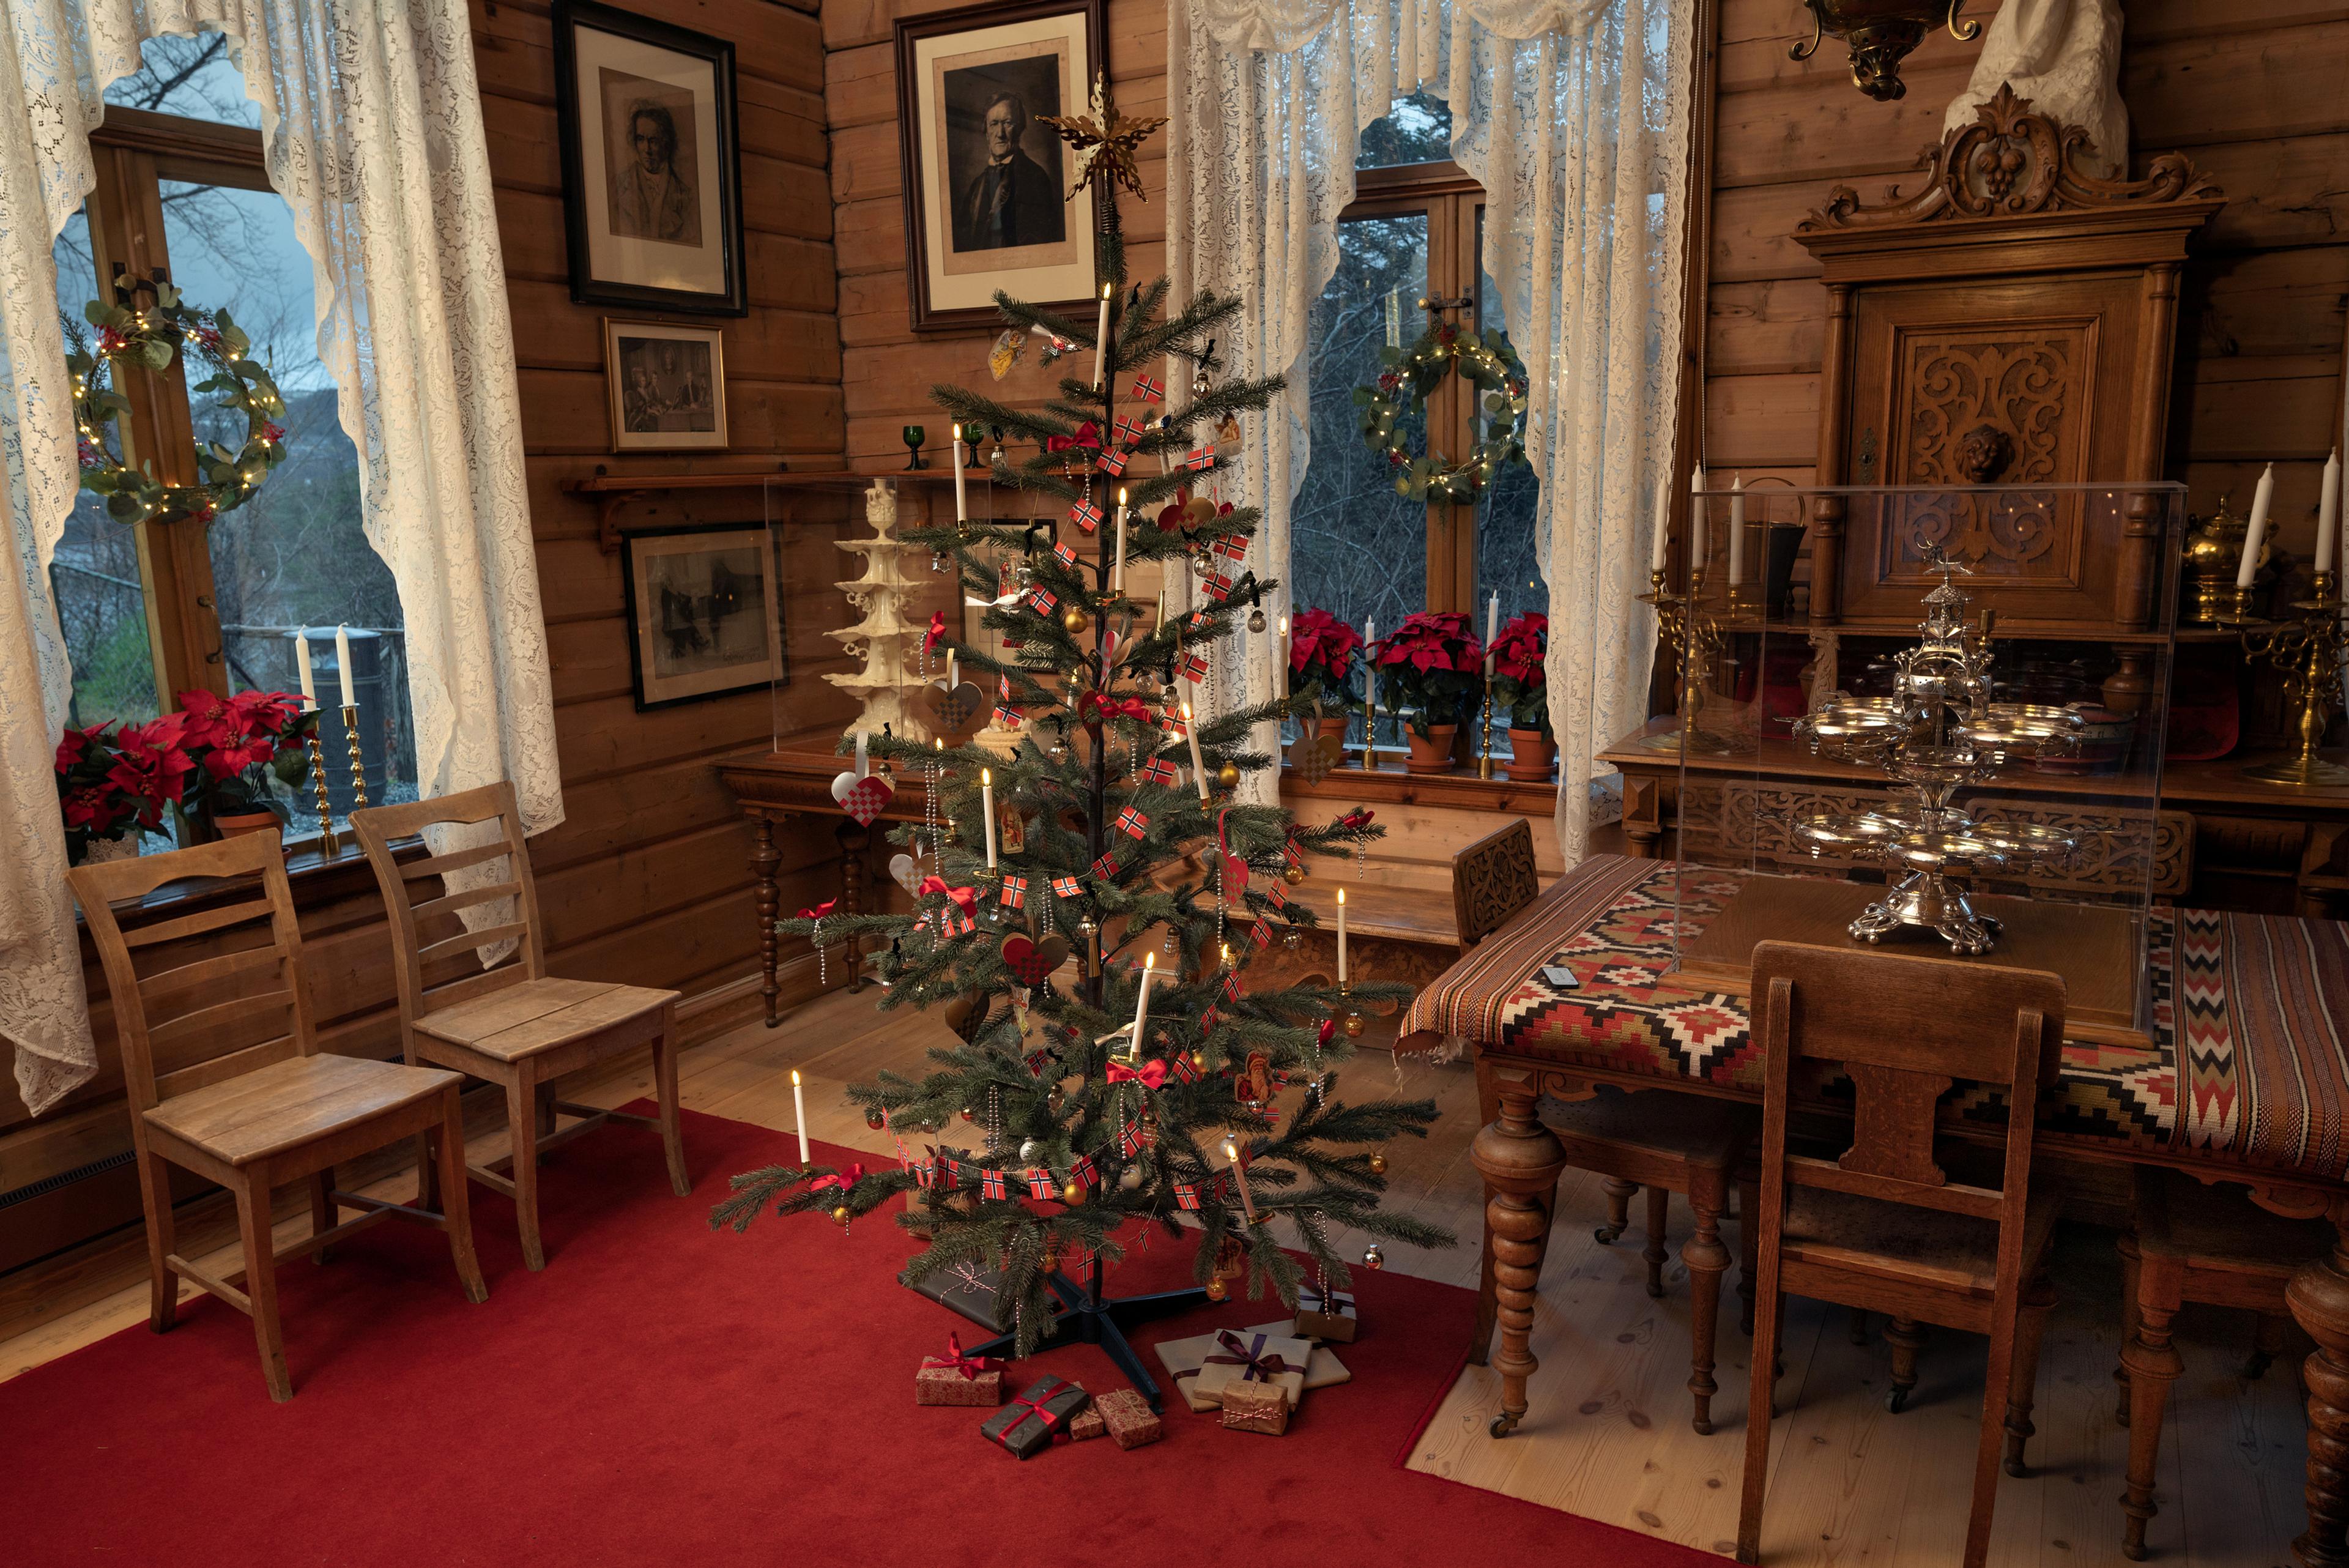 En av stuene på Troldhaugen pyntet til jul, med et juletre midt i bildet